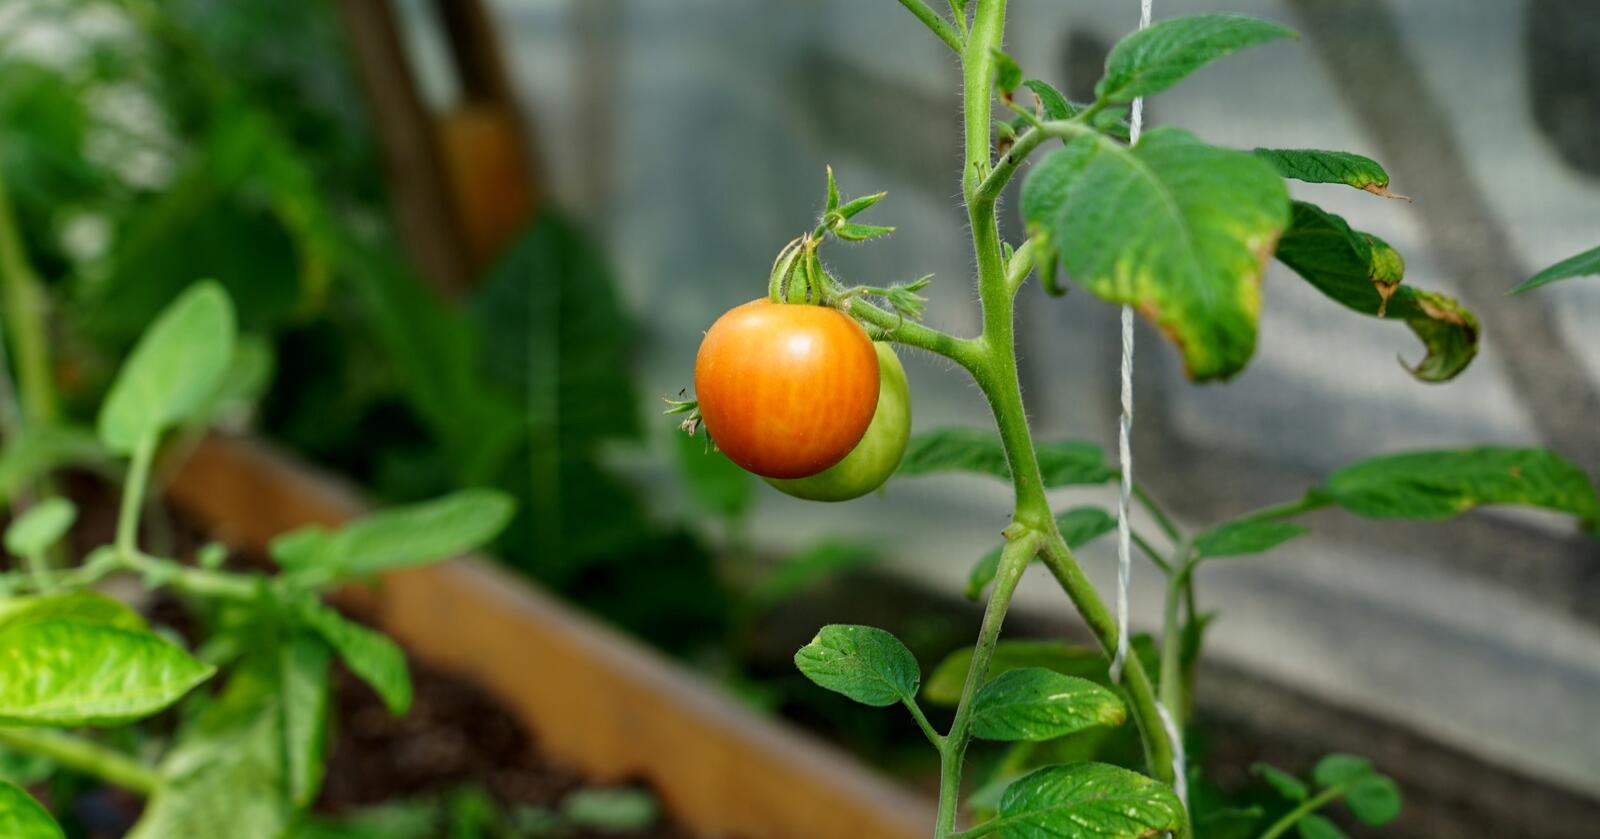 Mange produsenter av grønnsaker, spesielt i veksthus, har kjent på det økte kostnadsbildet. Blant annet produsenter av agurk og tomat. Foto: Lars Bilit Hagen